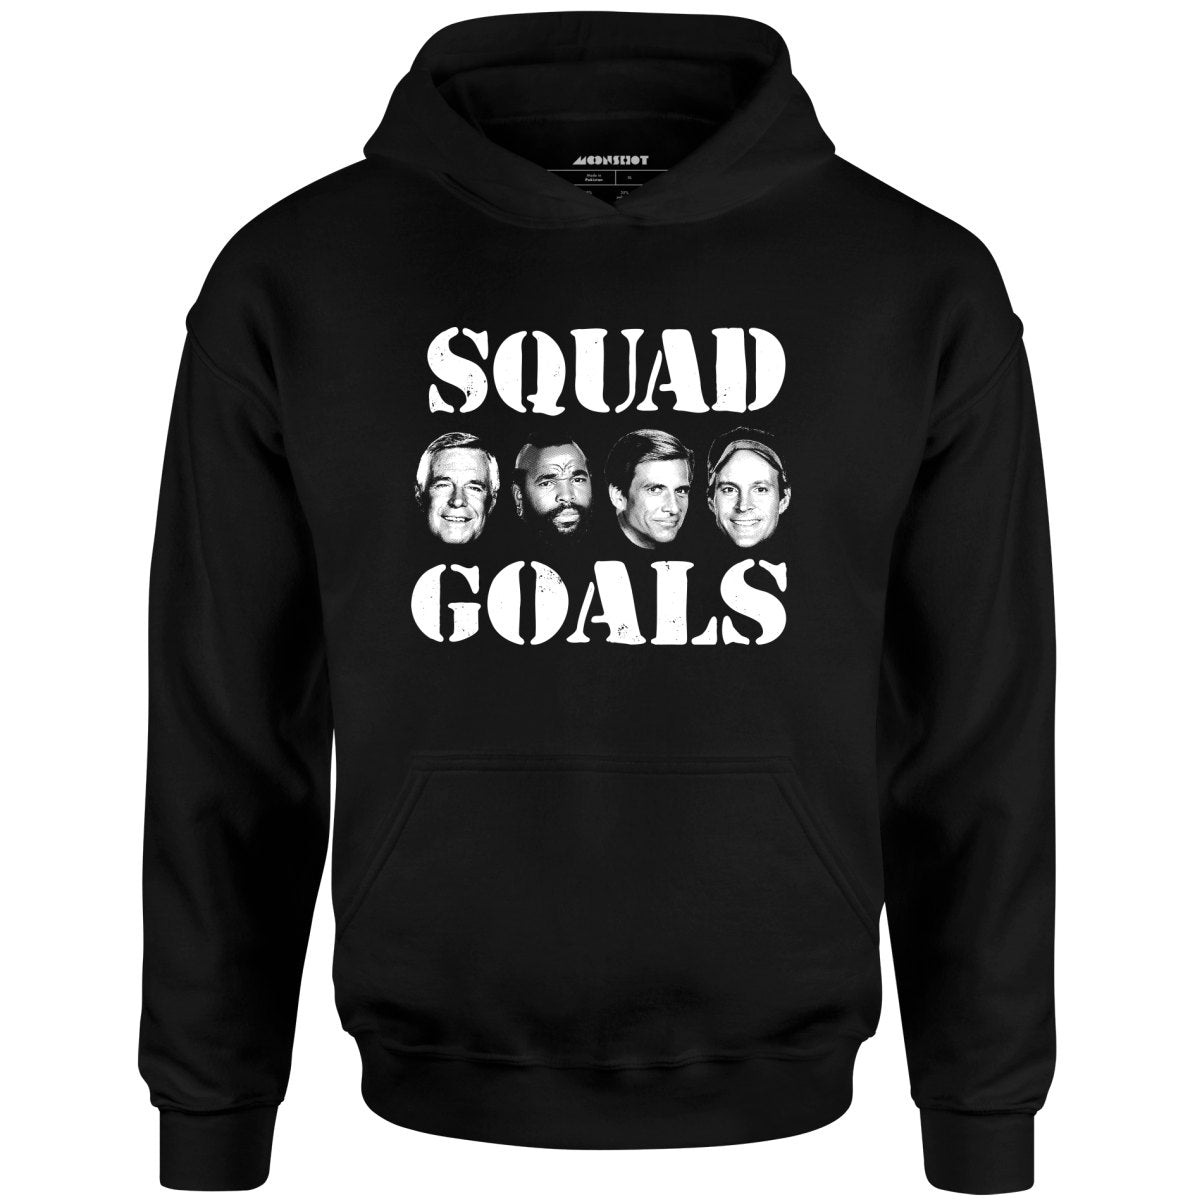 Squad Goals - A-Team - Unisex Hoodie